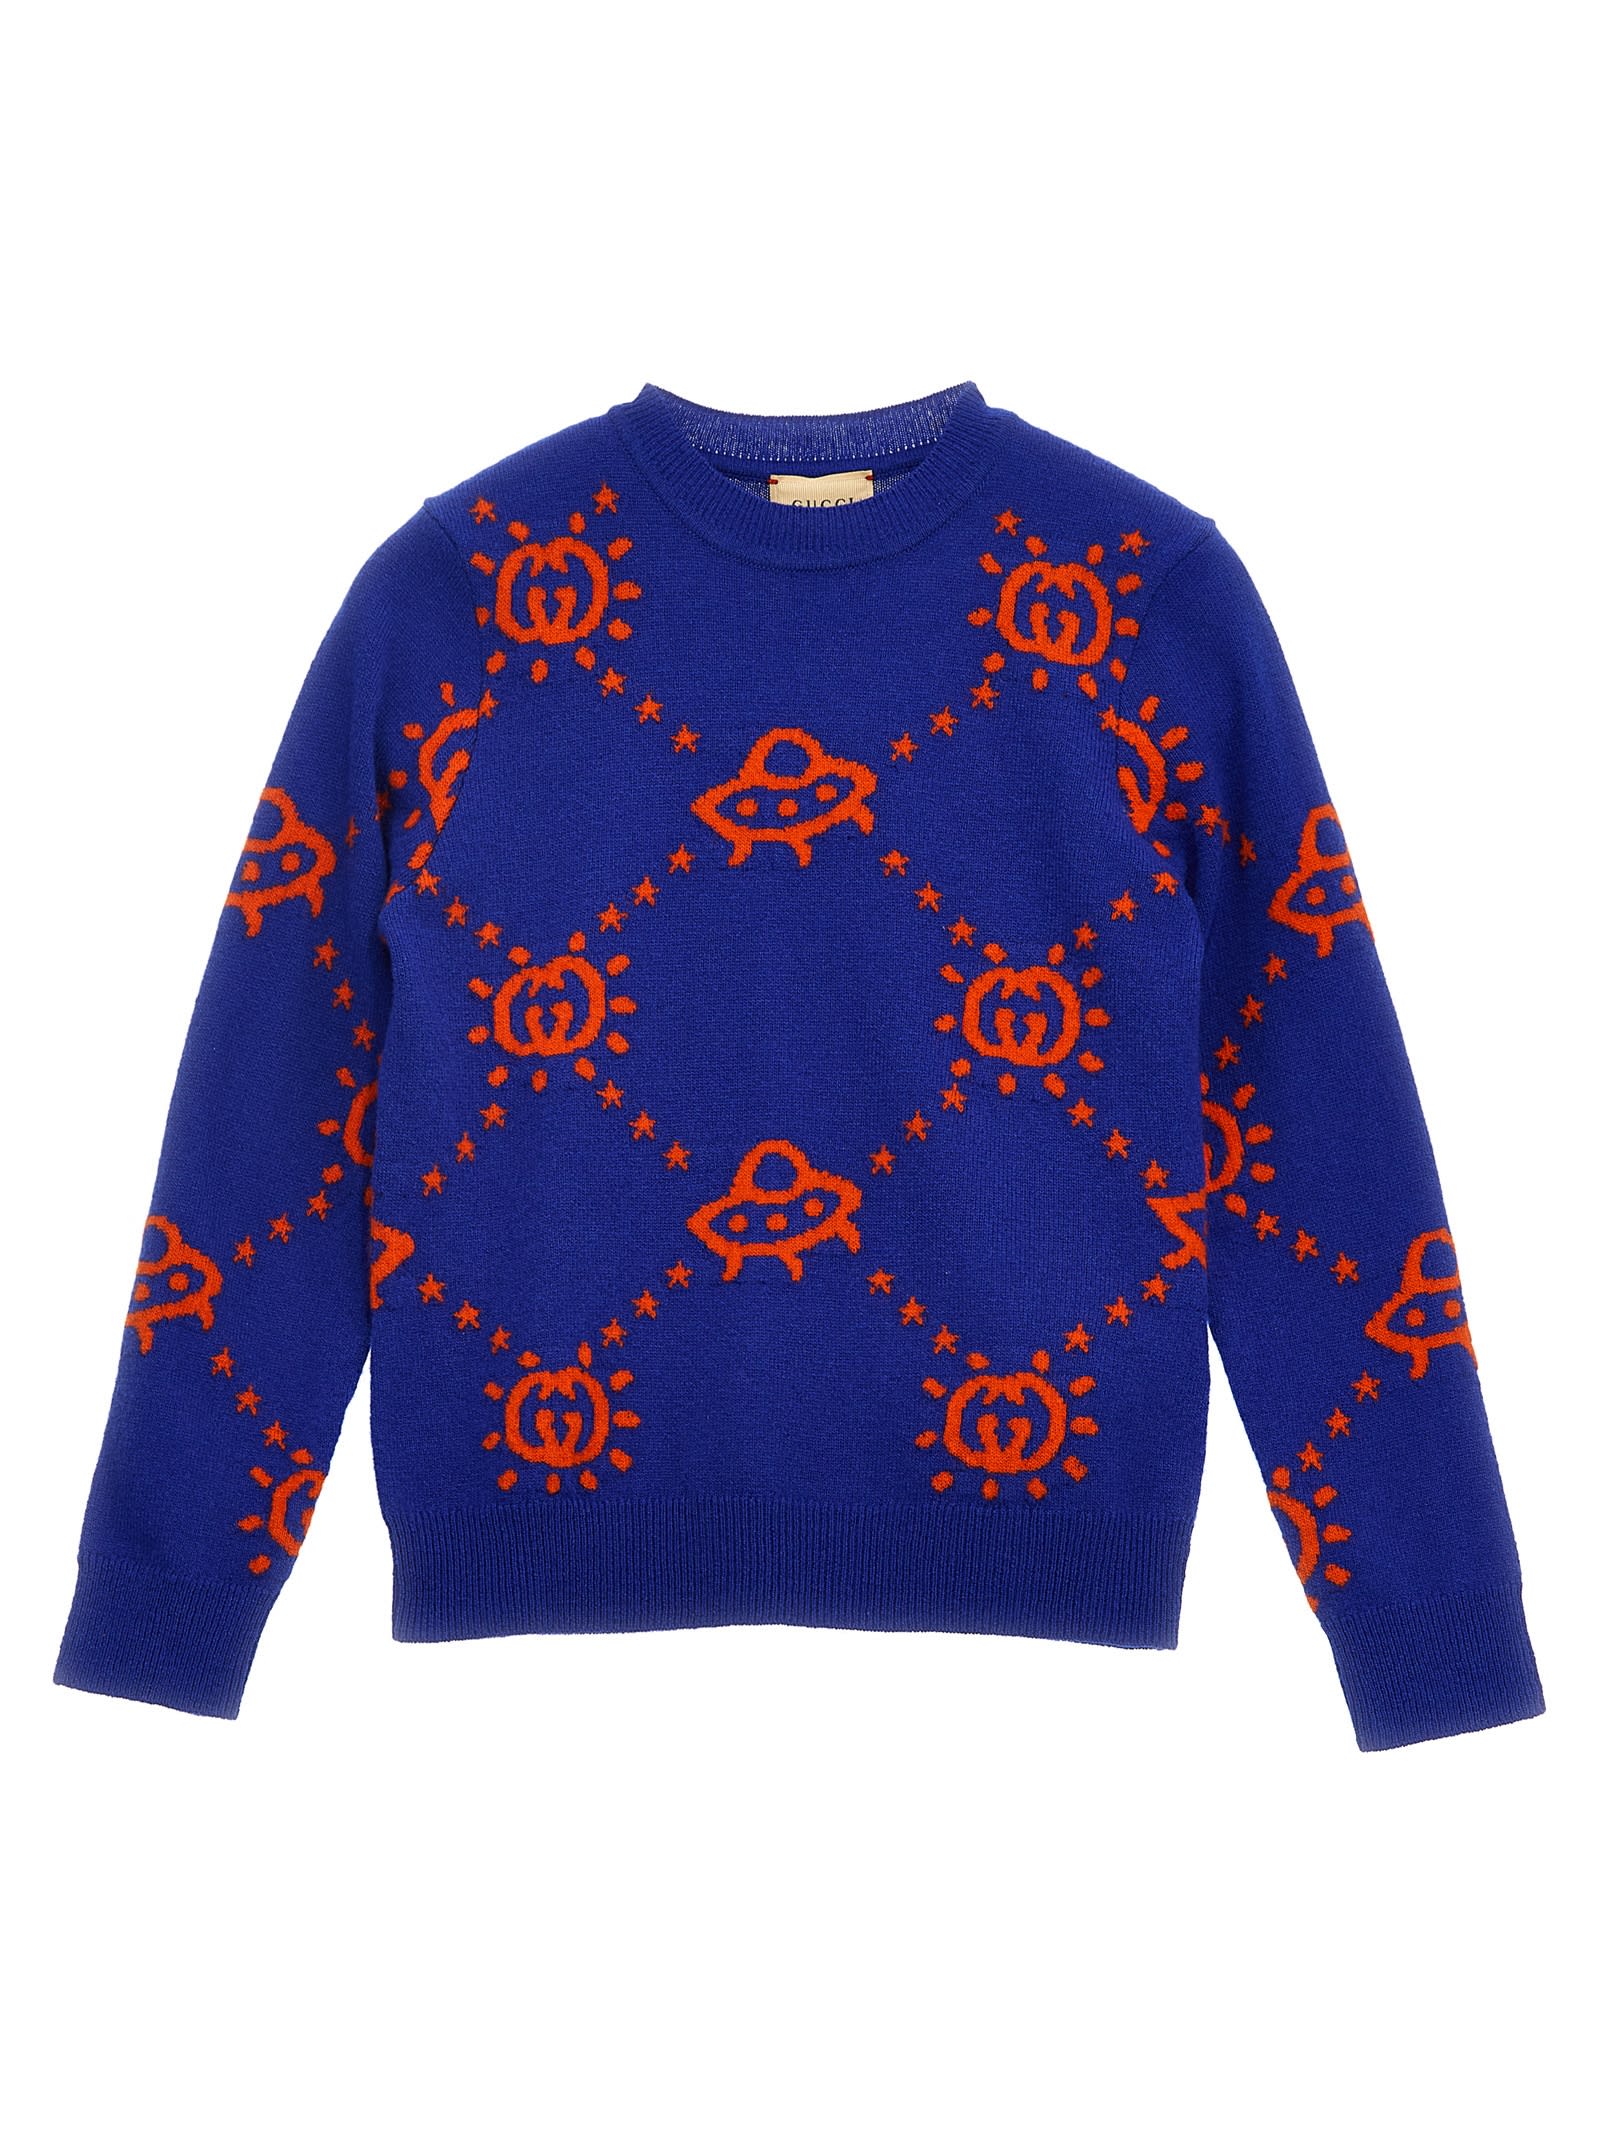 Gucci Kids' Ufo Sweater In Blue